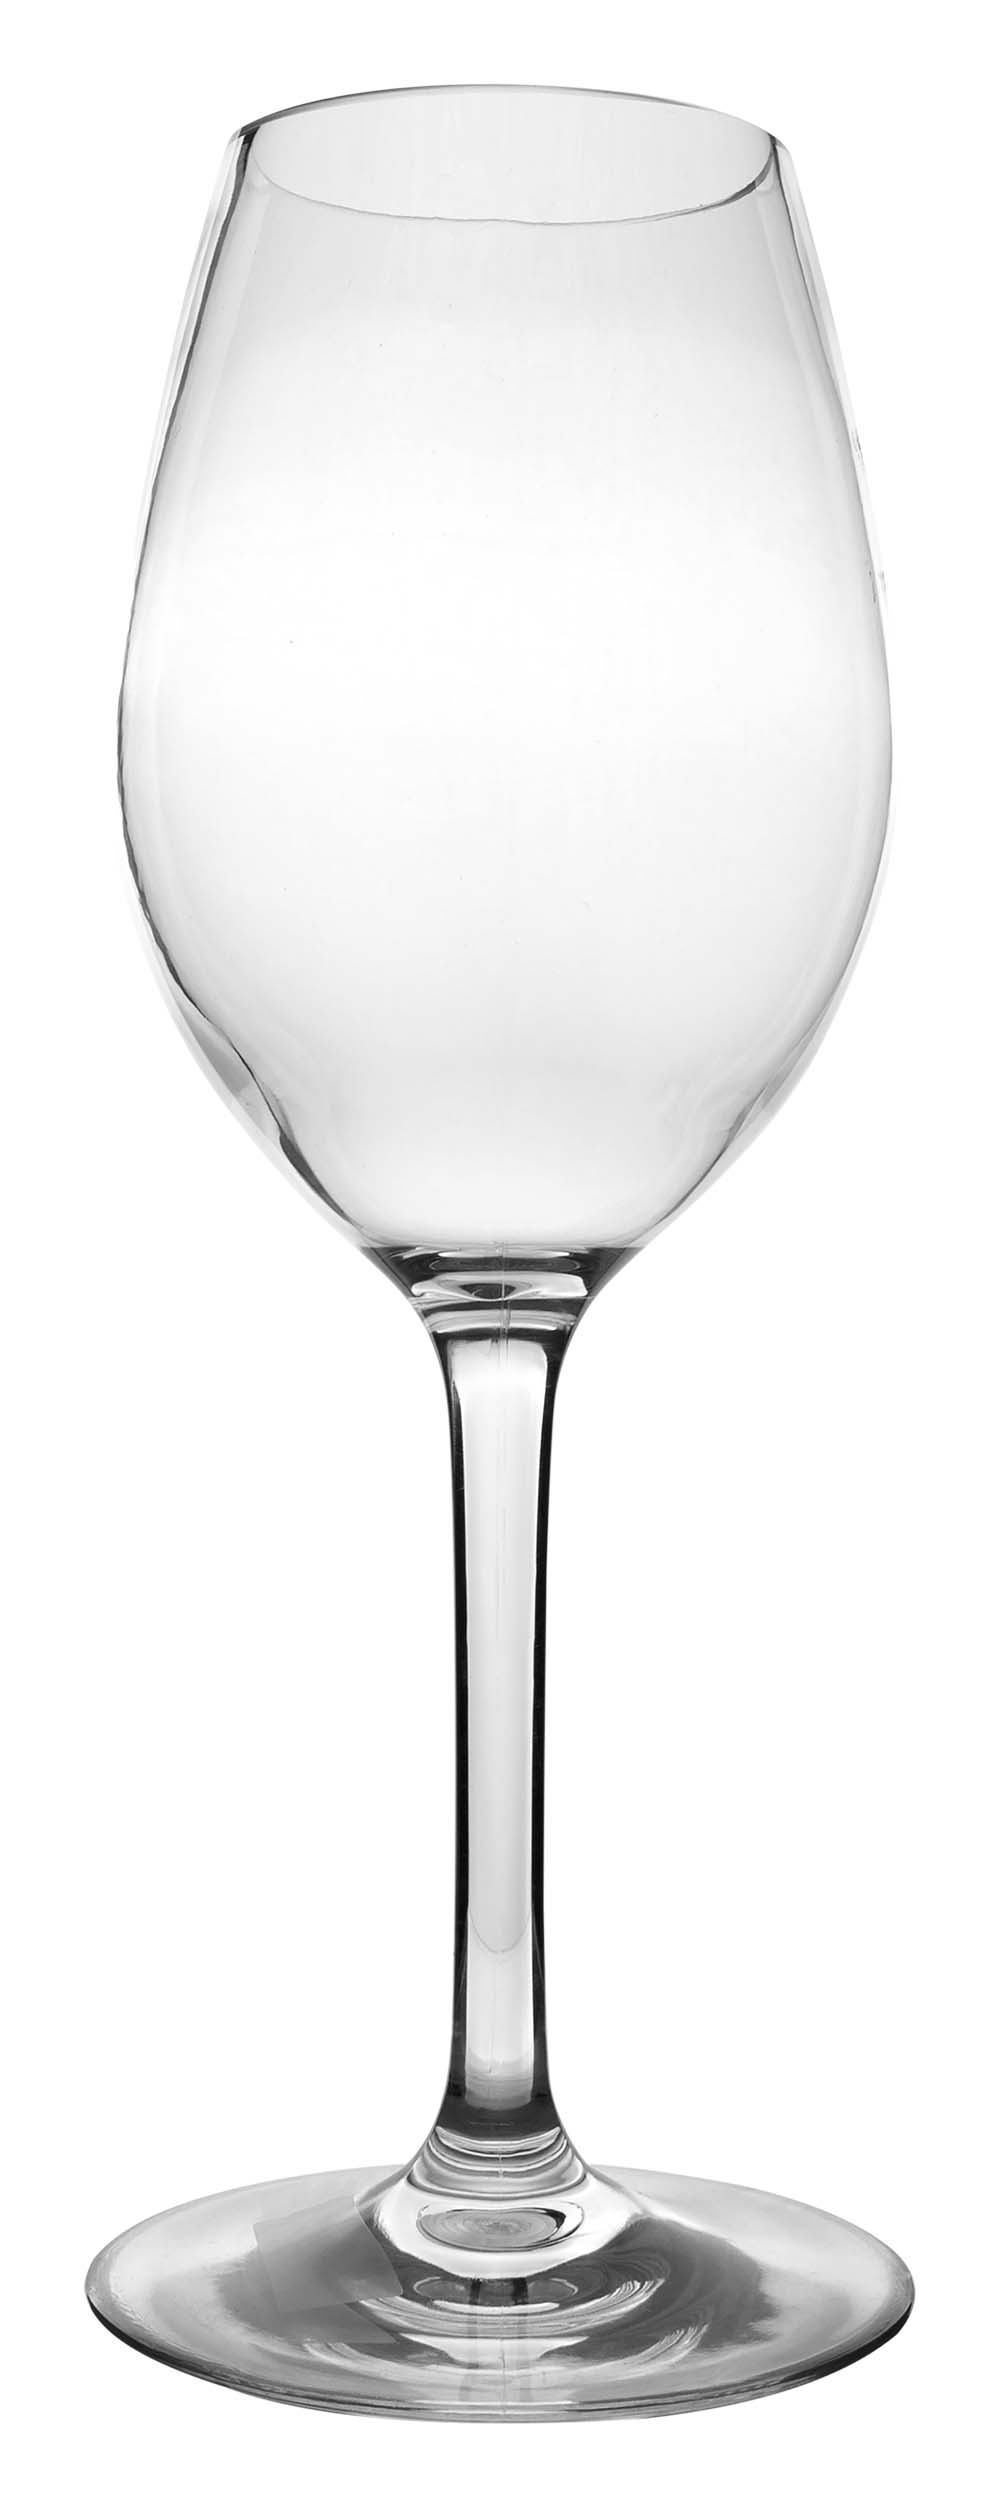 6101460 Een extra stevig en elegant witte wijnglas. Gemaakt van 100% tritan. Hierdoor is het glas vrijwel onbreekbaar, lichtgewicht en kraswerend. Ook is dit glas vaatwasmachinebestendig. Het glas is BPA vrij.